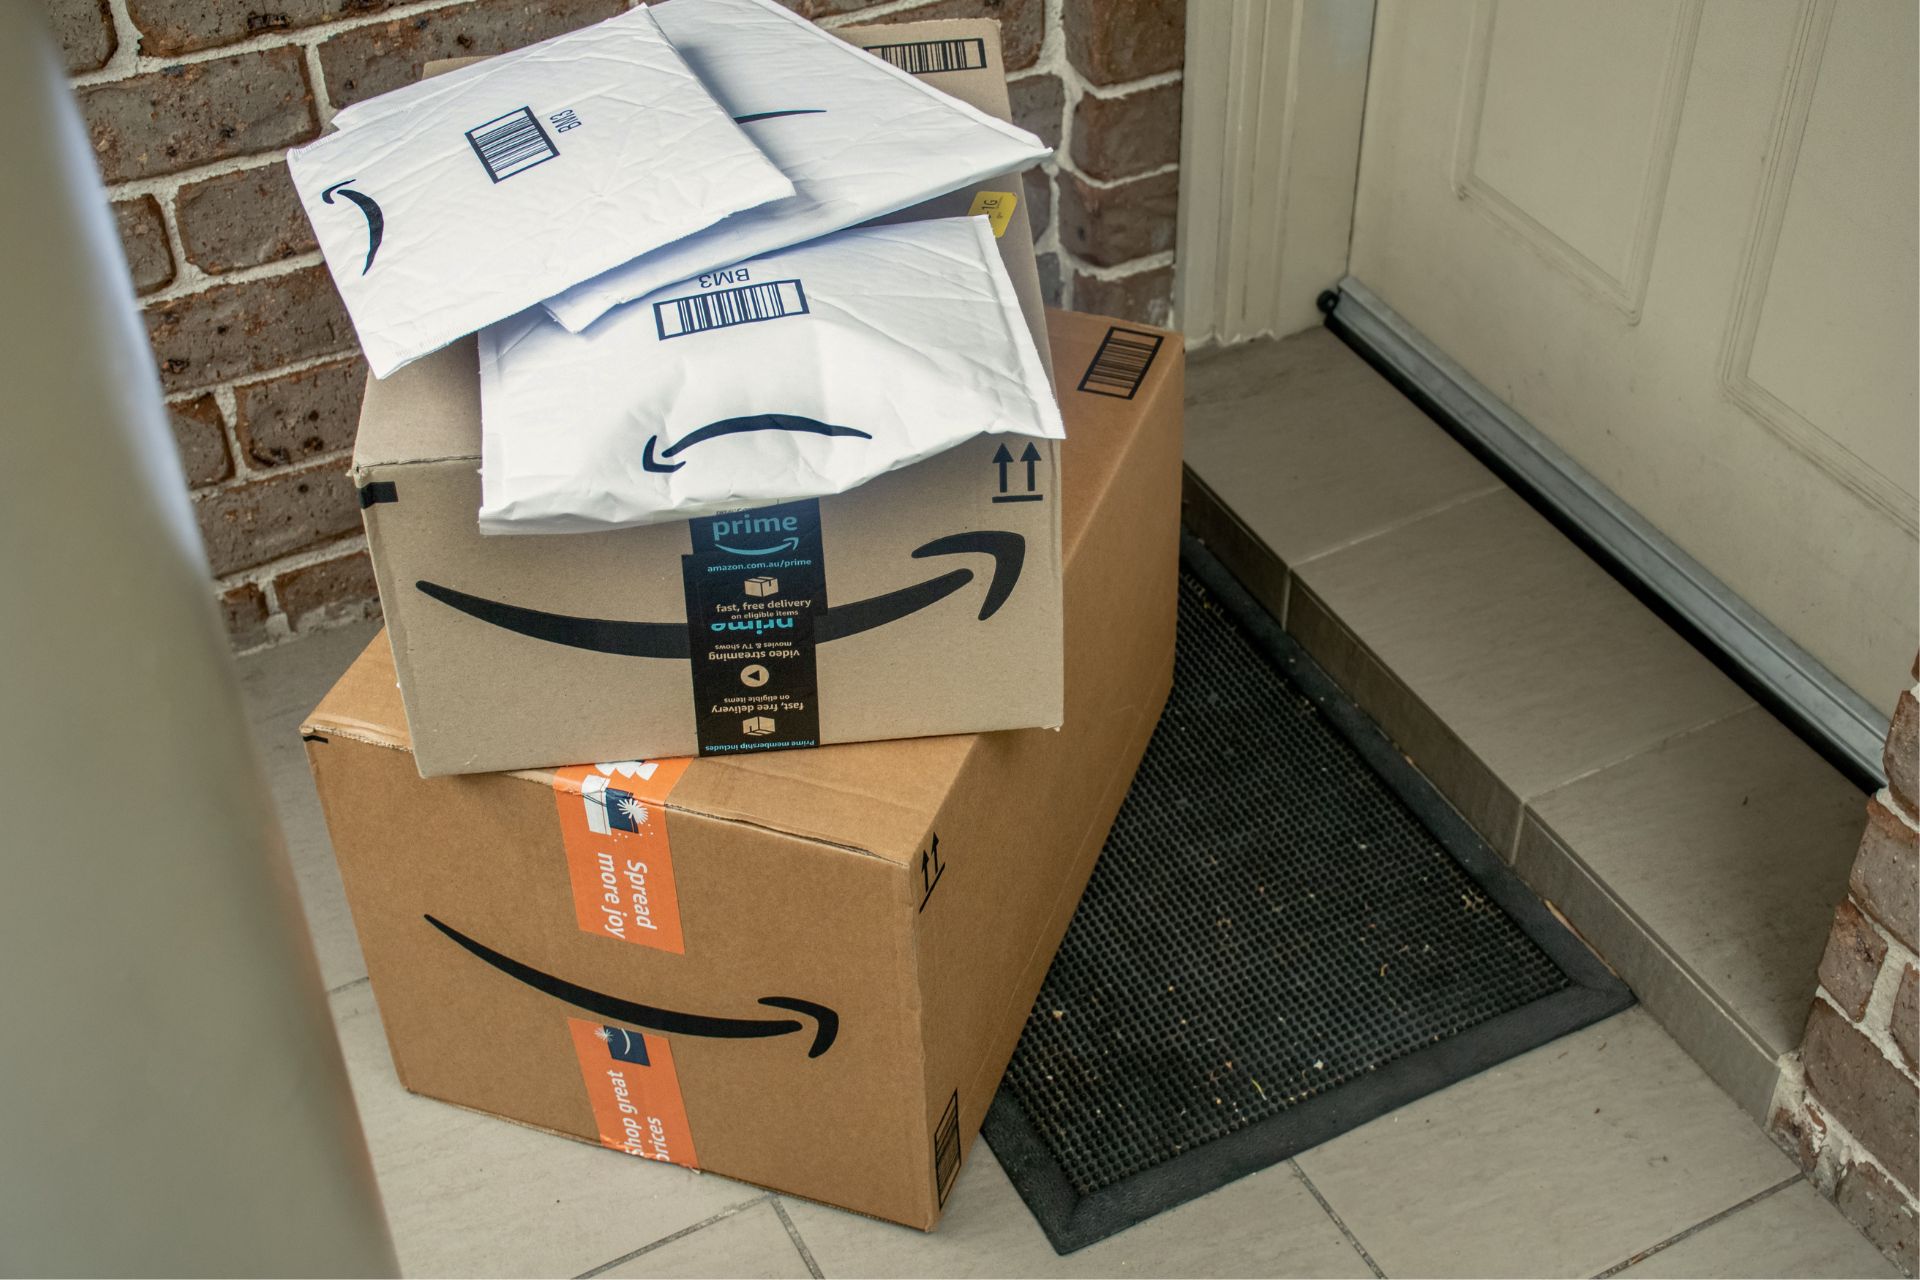 Iklan Amazon: Iklan Amazon, seperti eCommerce, adalah lingkungan yang bergerak cepat dan berkembang